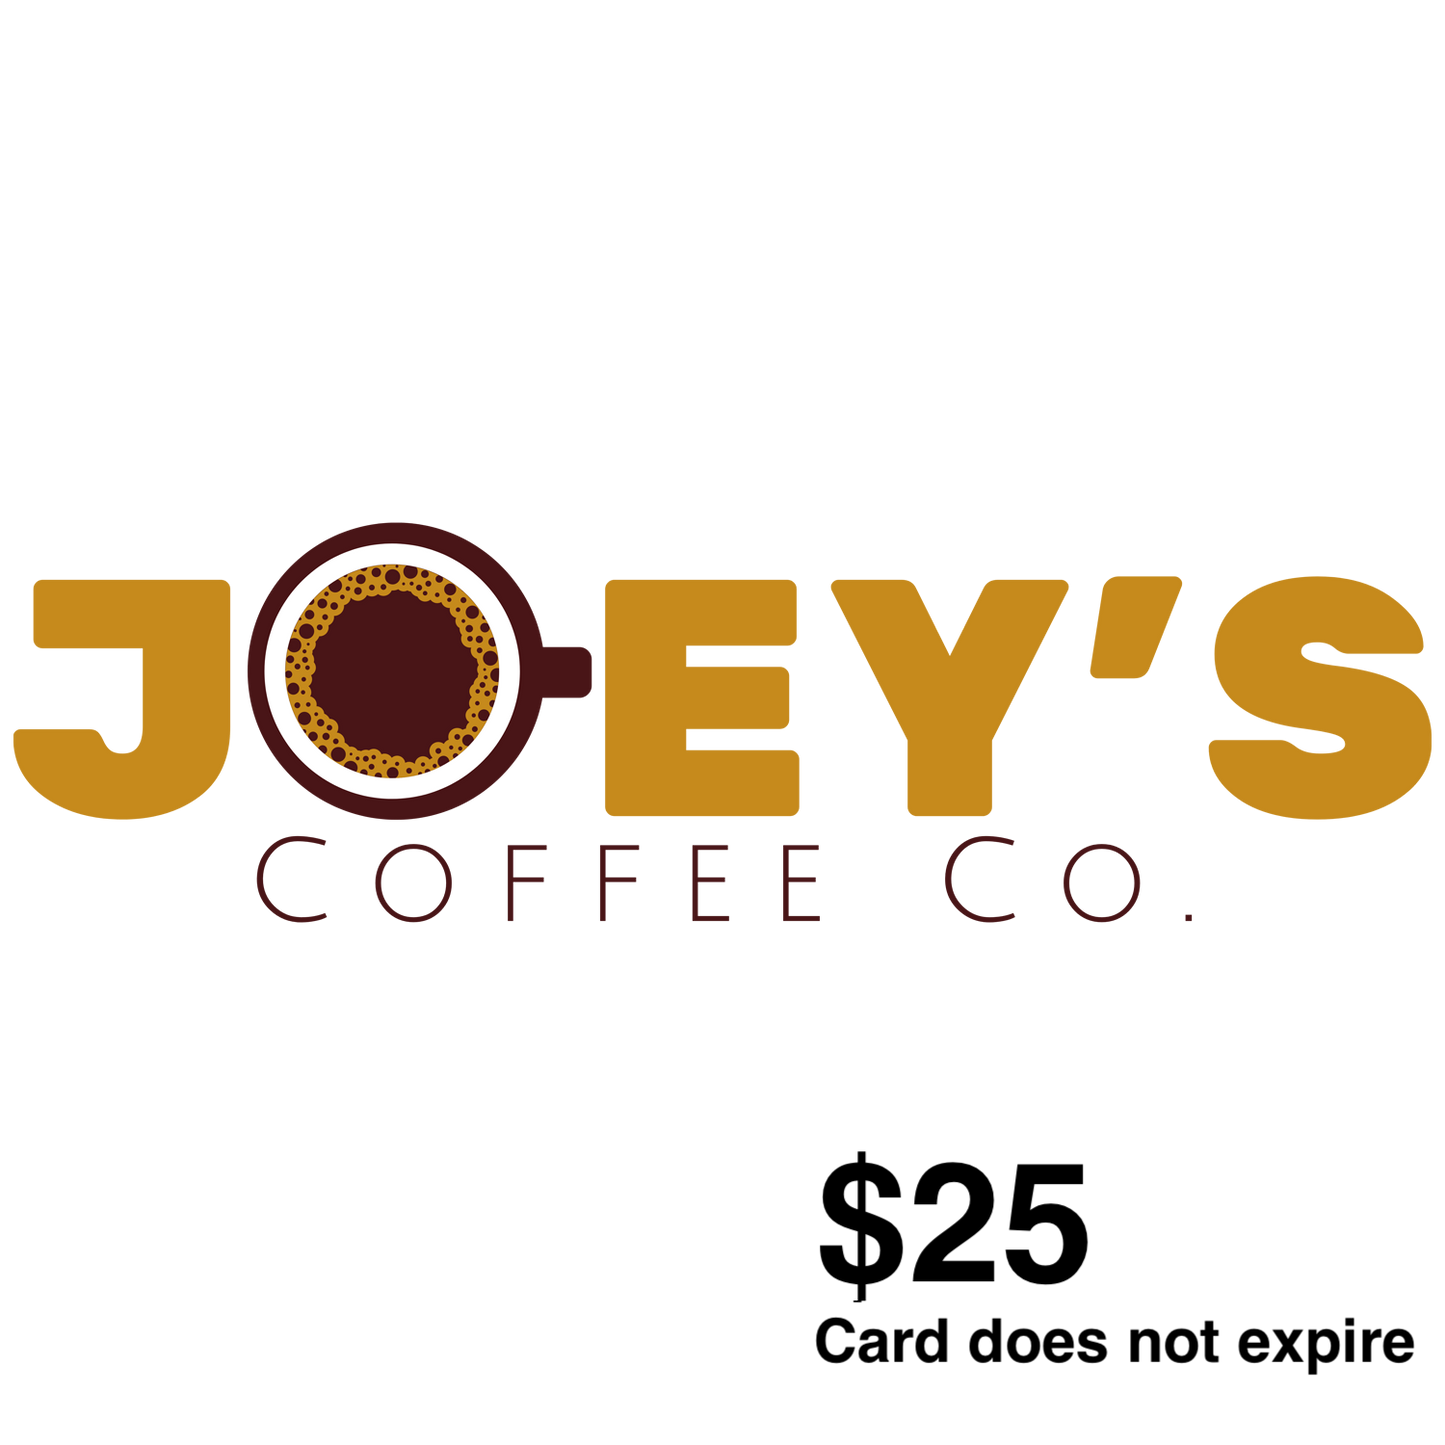 Joey's Coffee Co. Gift Card